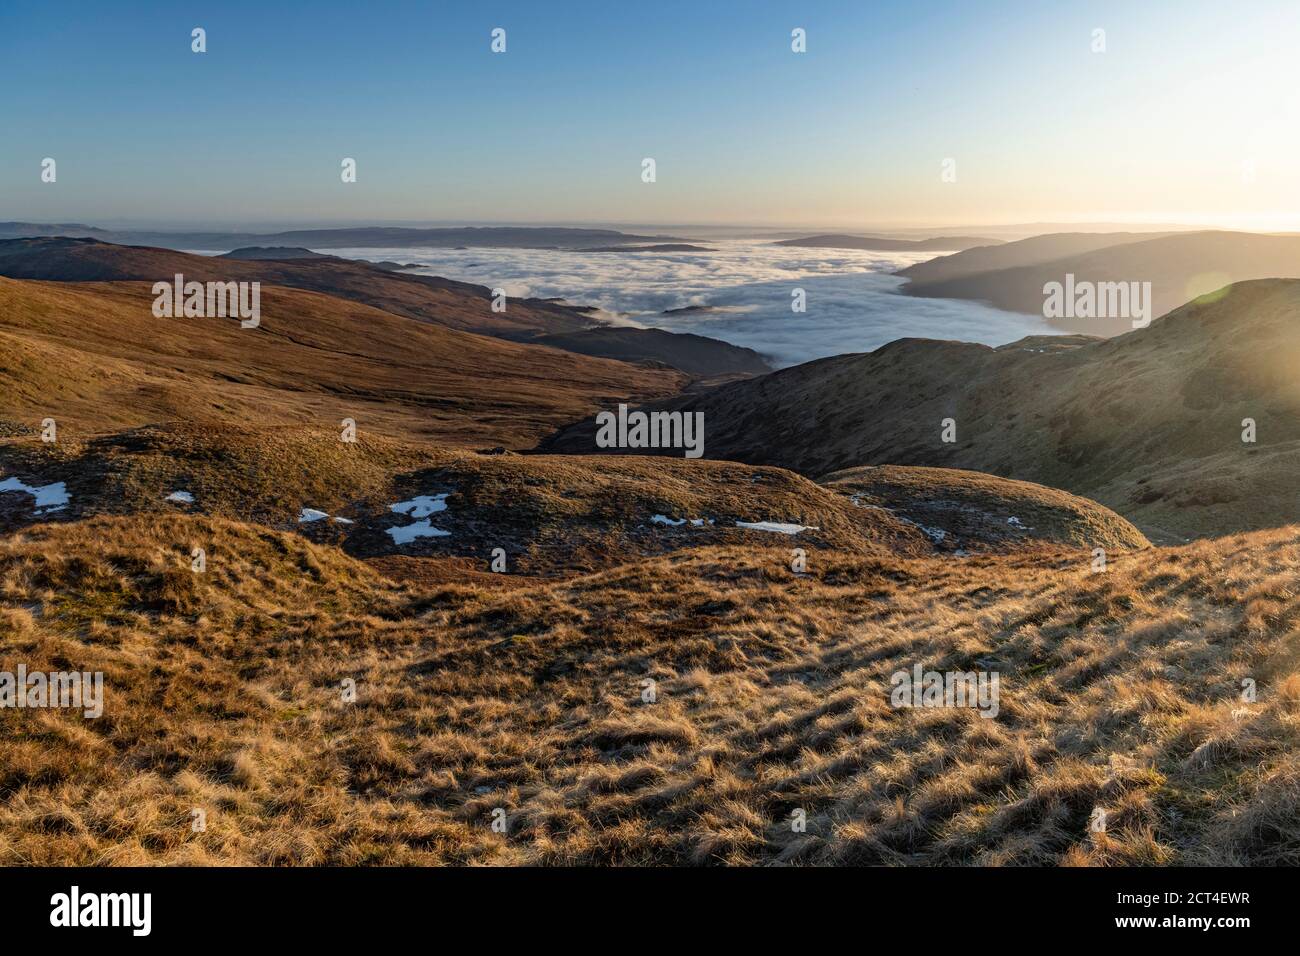 Paesaggio montano delle Highlands scozzesi al tramonto, durante le escursioni su ben Lomond nel Trossachs National Park, Scozia, Regno Unito, Europa Foto Stock